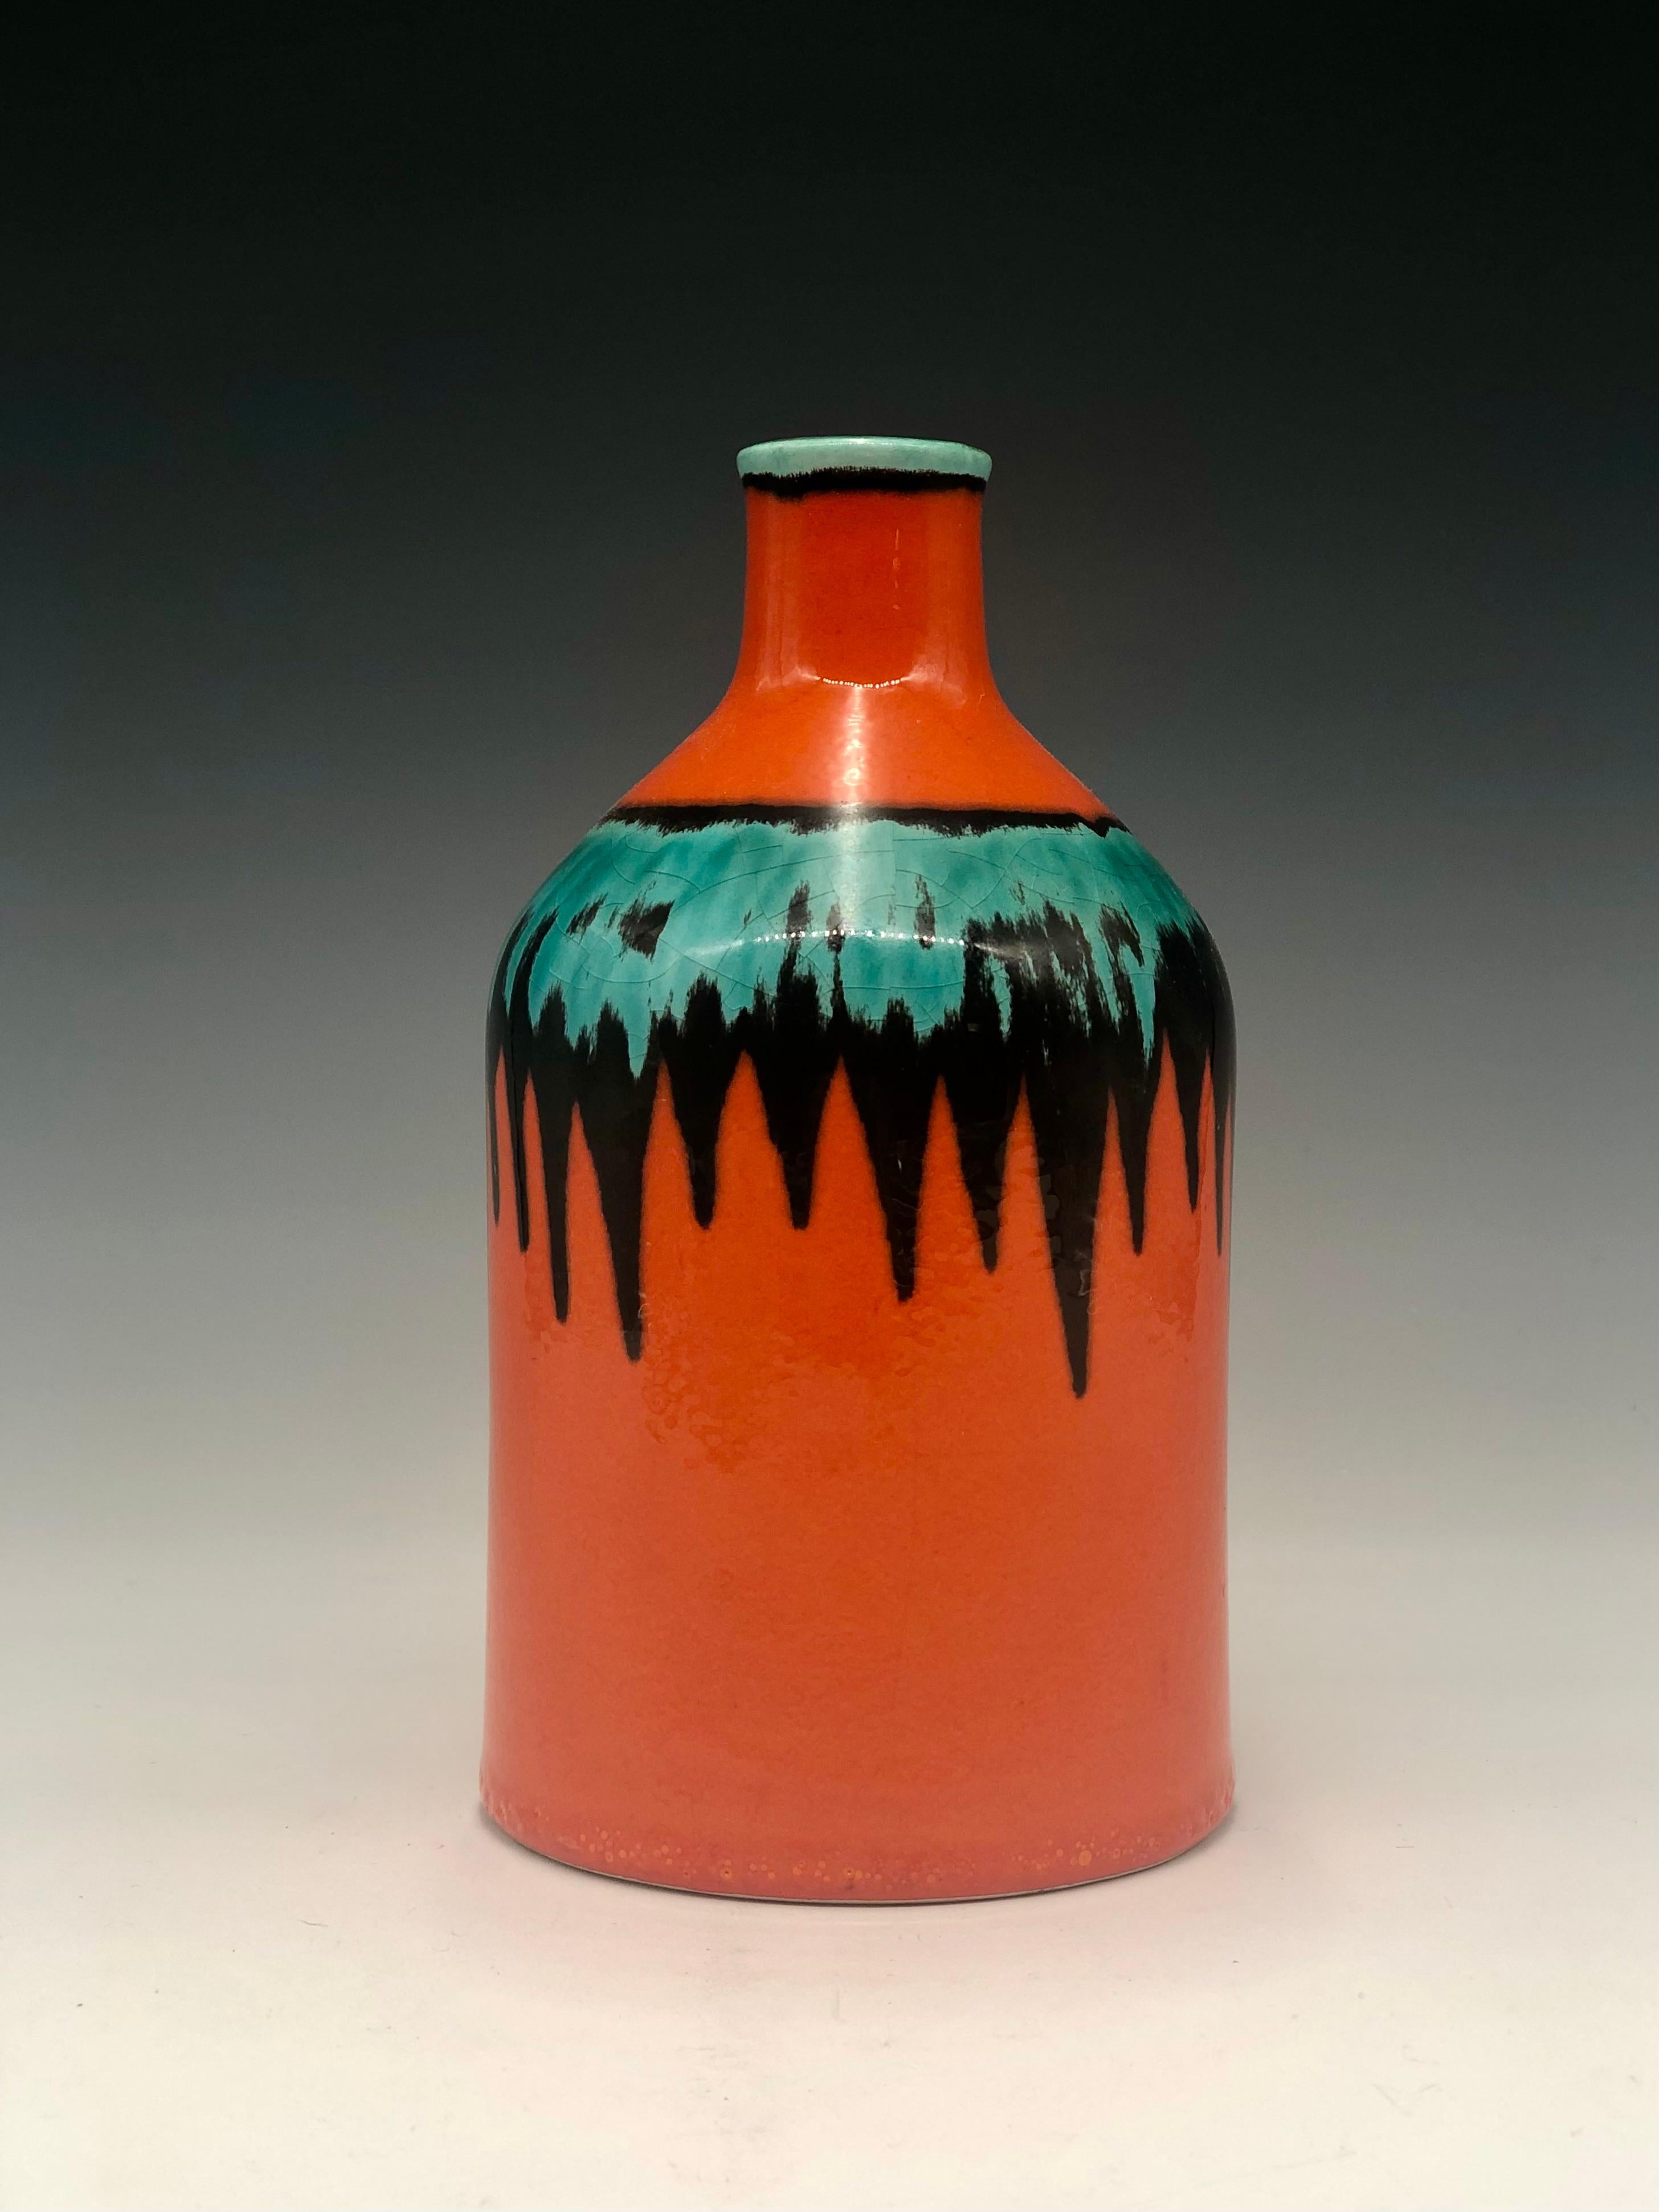 Vase du milieu du siècle aux couleurs vives et audacieuses, orange, noir et vert aqua, par Cortendorf. Un bel exemple de poterie d'art ouest-allemande des années 1950. Il porte l'étiquette originale du fabricant, 